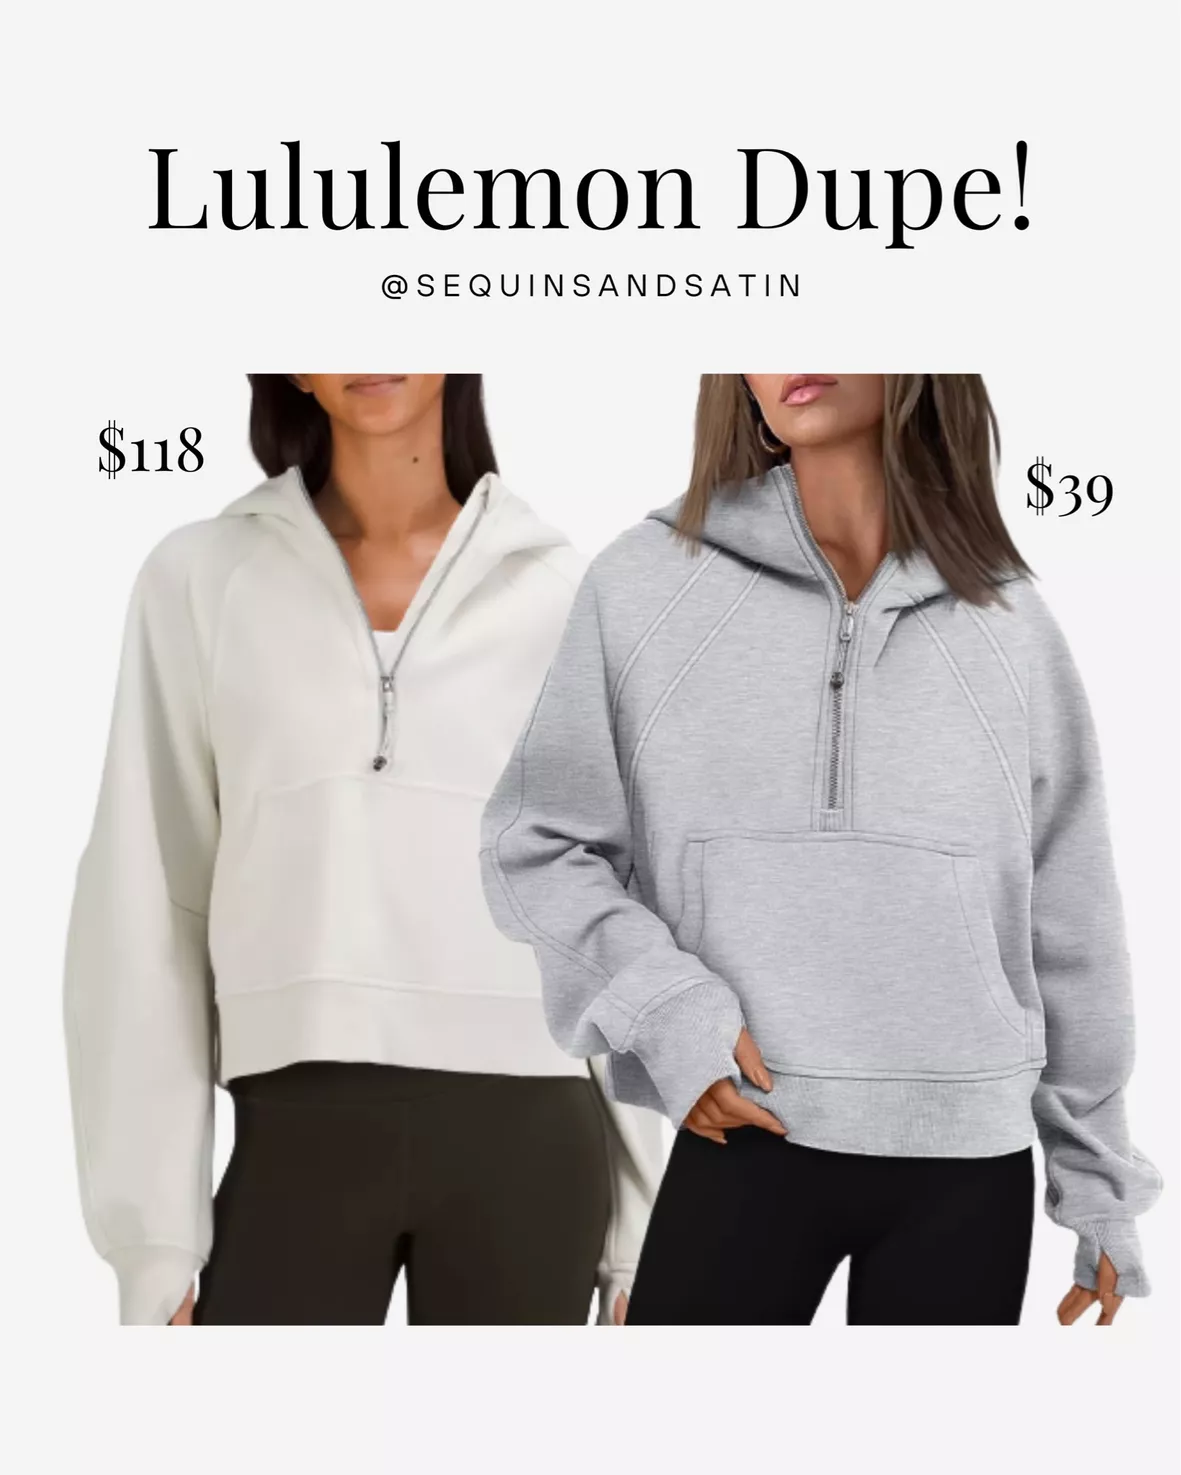 Would ya nab these $10 sweats? #luludupealert #scubadupe #lululemonhac